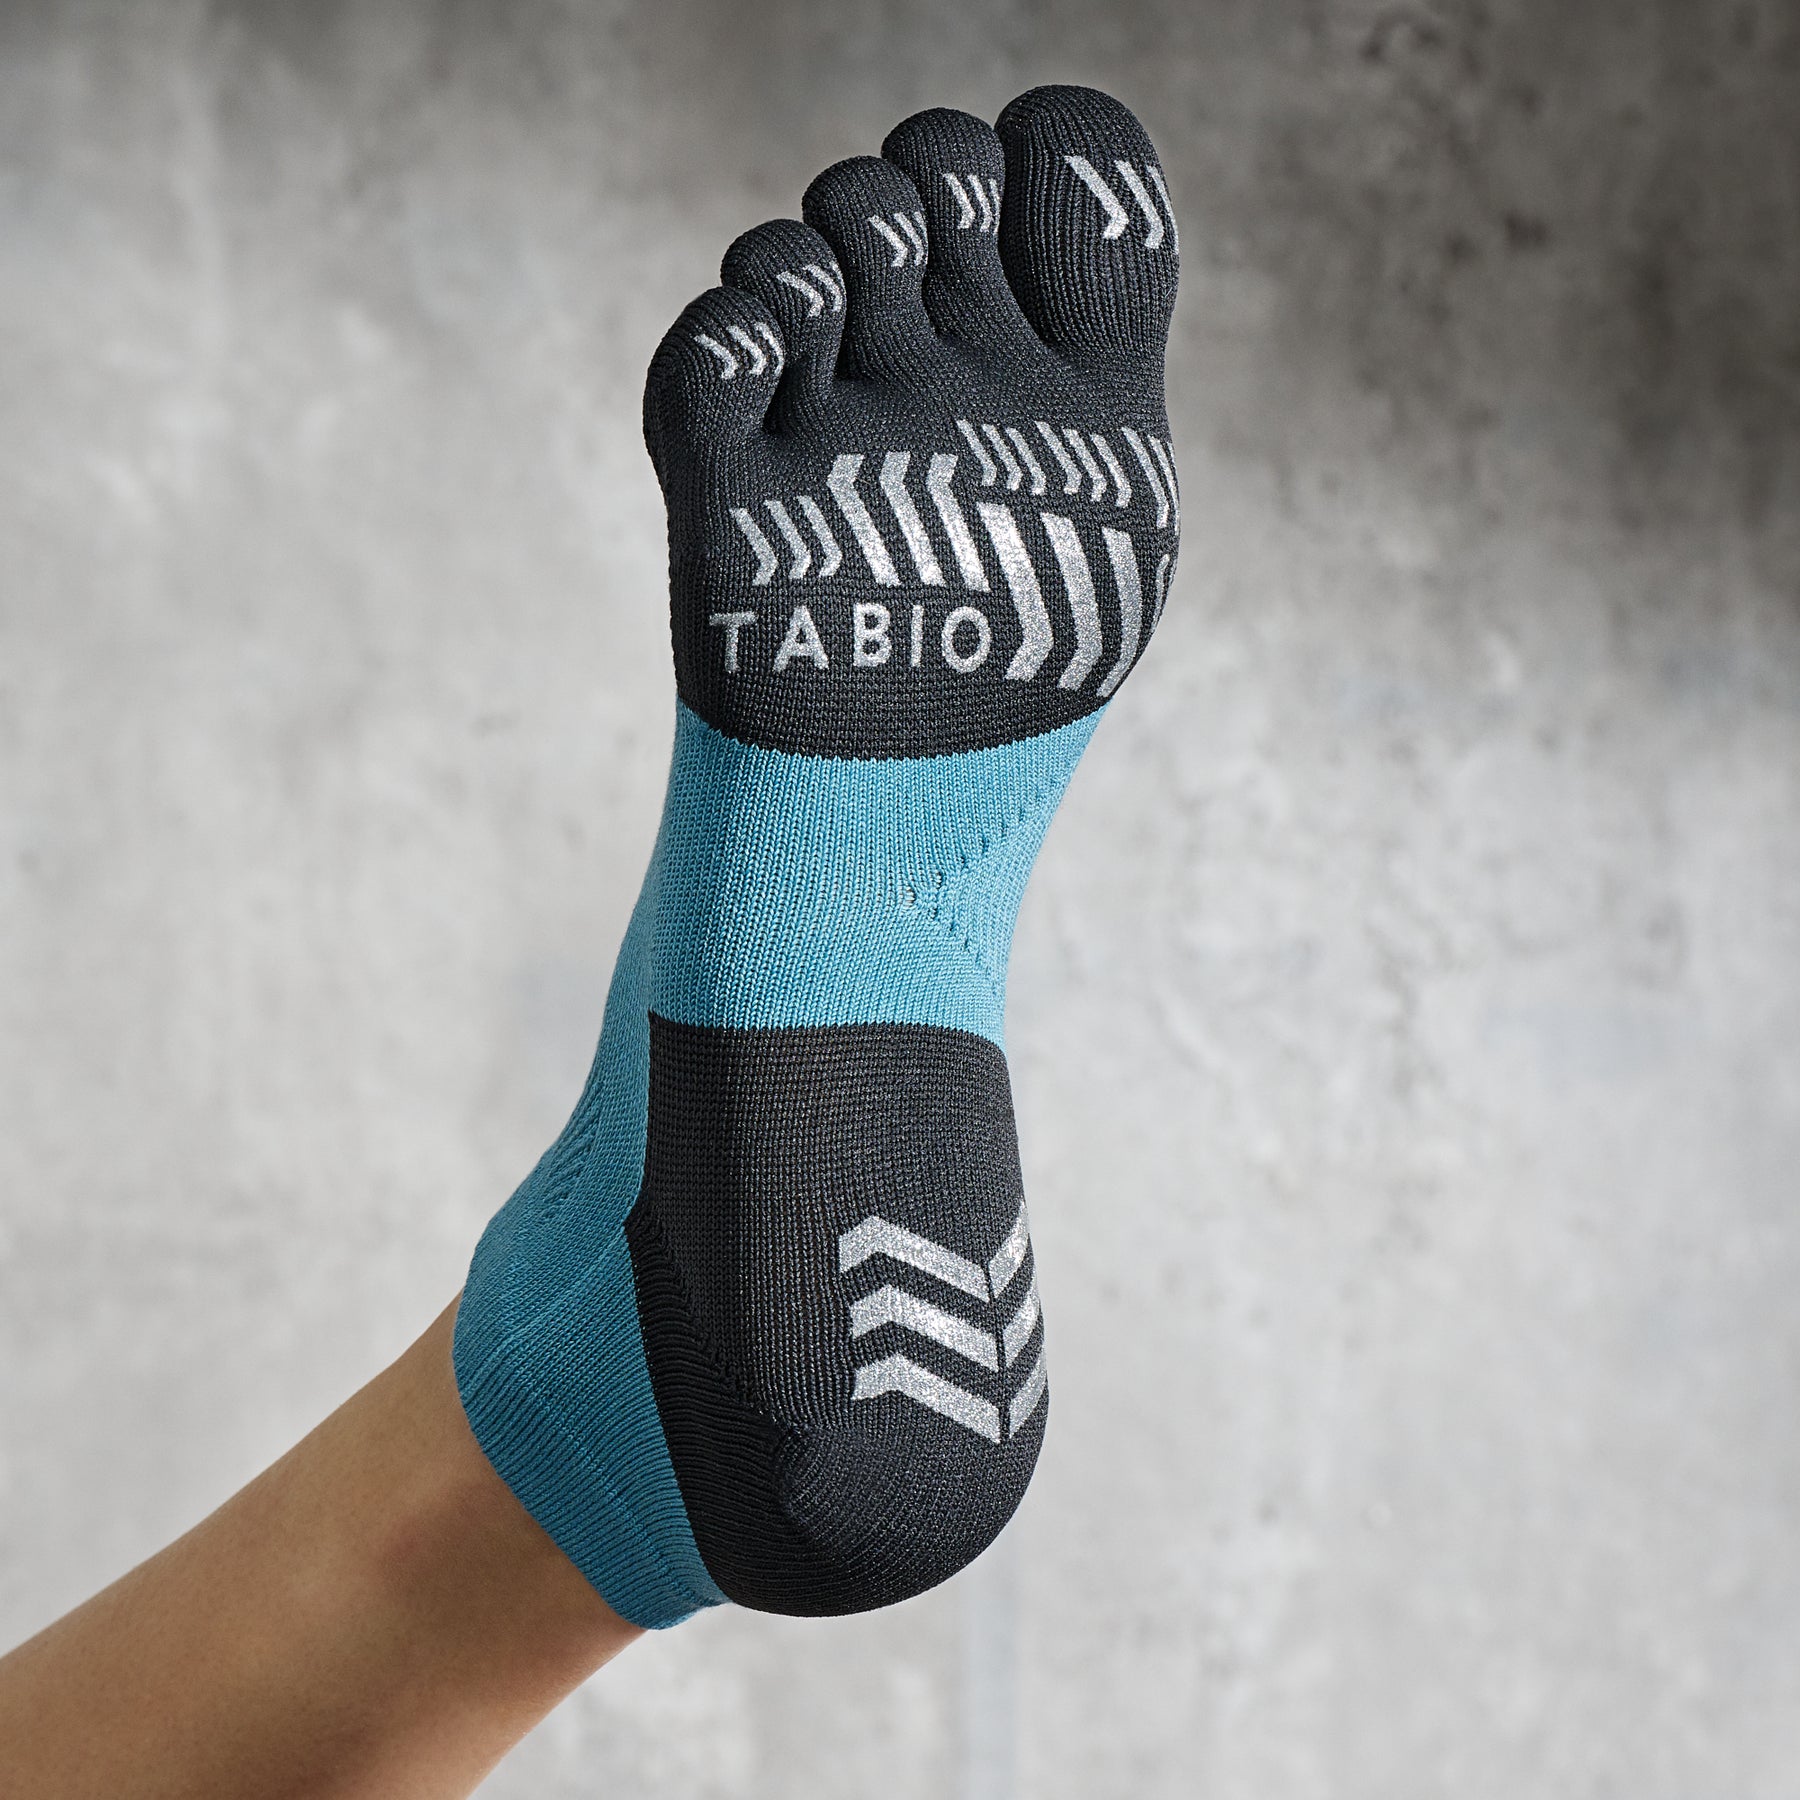 tabio socks